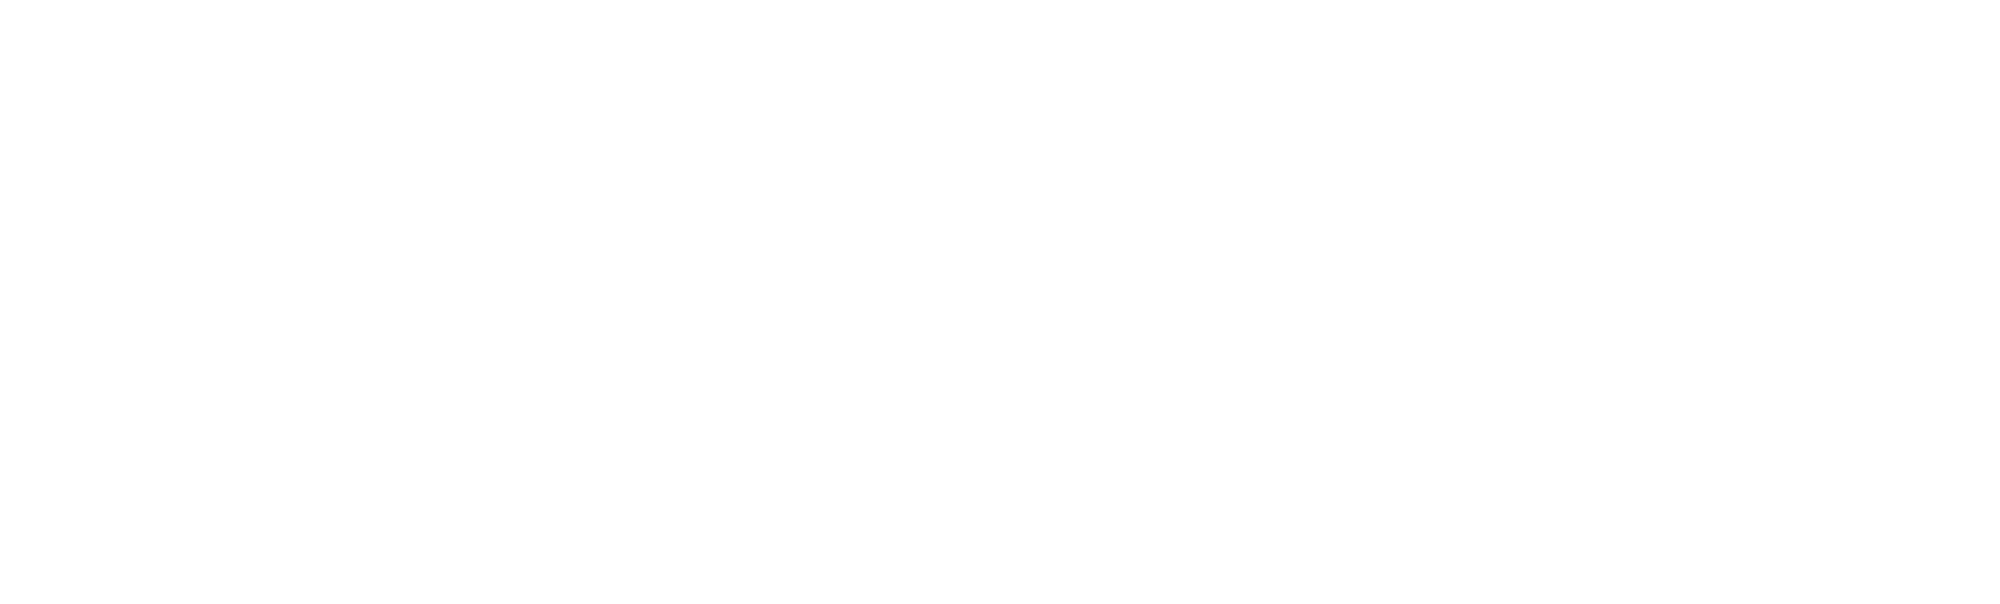 札幌タトゥー除去 | SSCクリニック | ピコレーザー